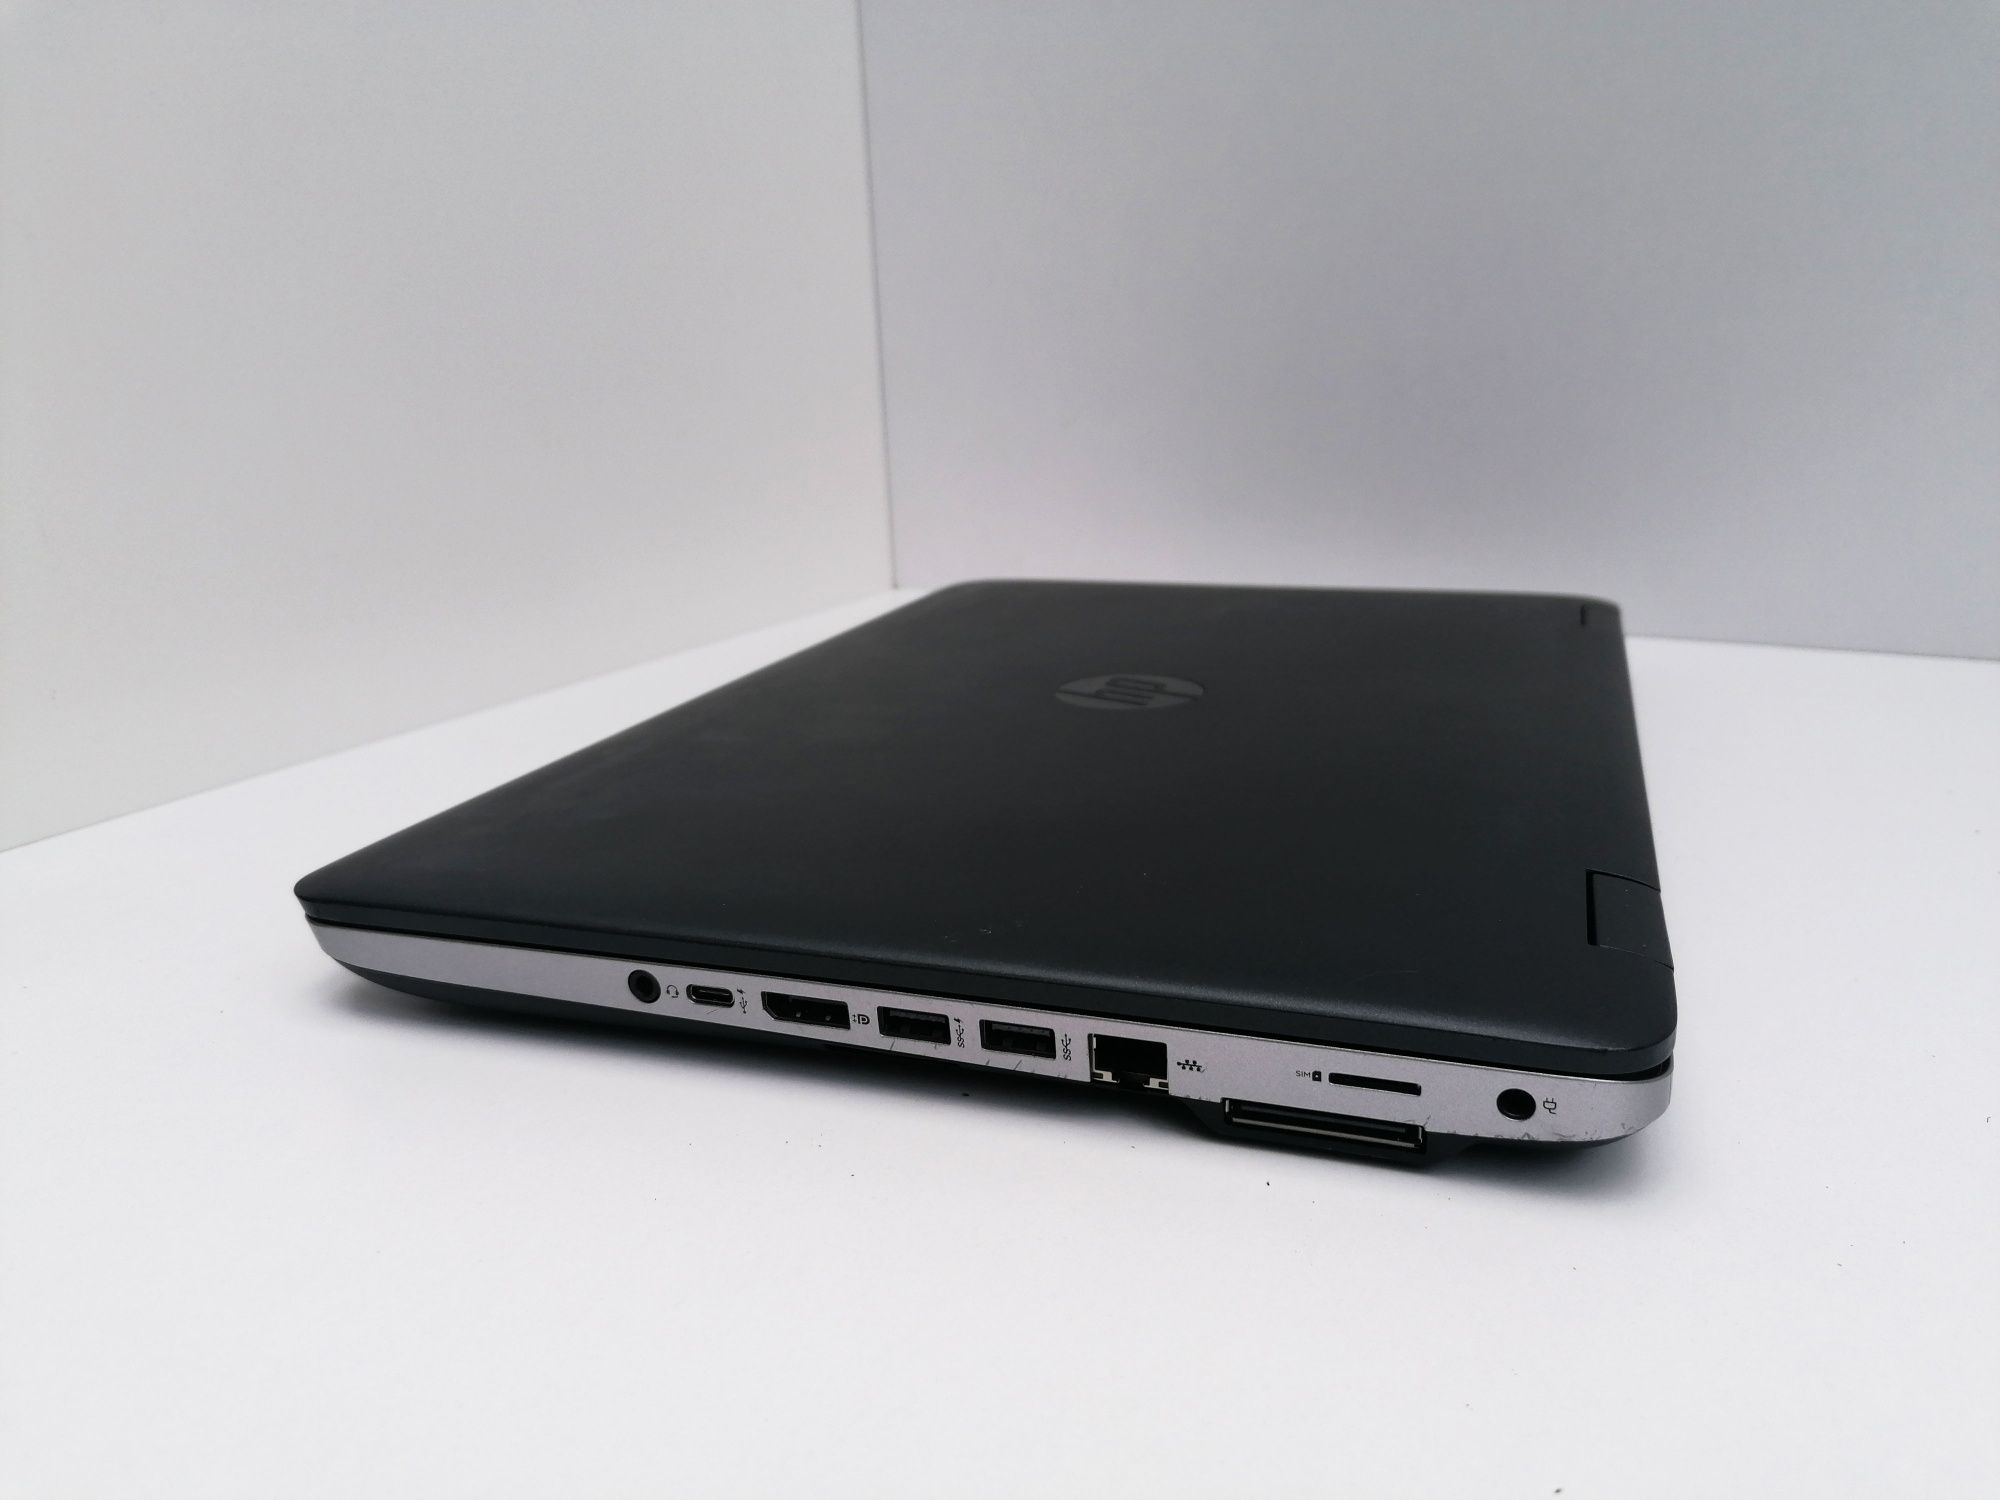 HP ProBook 650 G2 i5-6200U 8 GB RAM 256 GB SSD